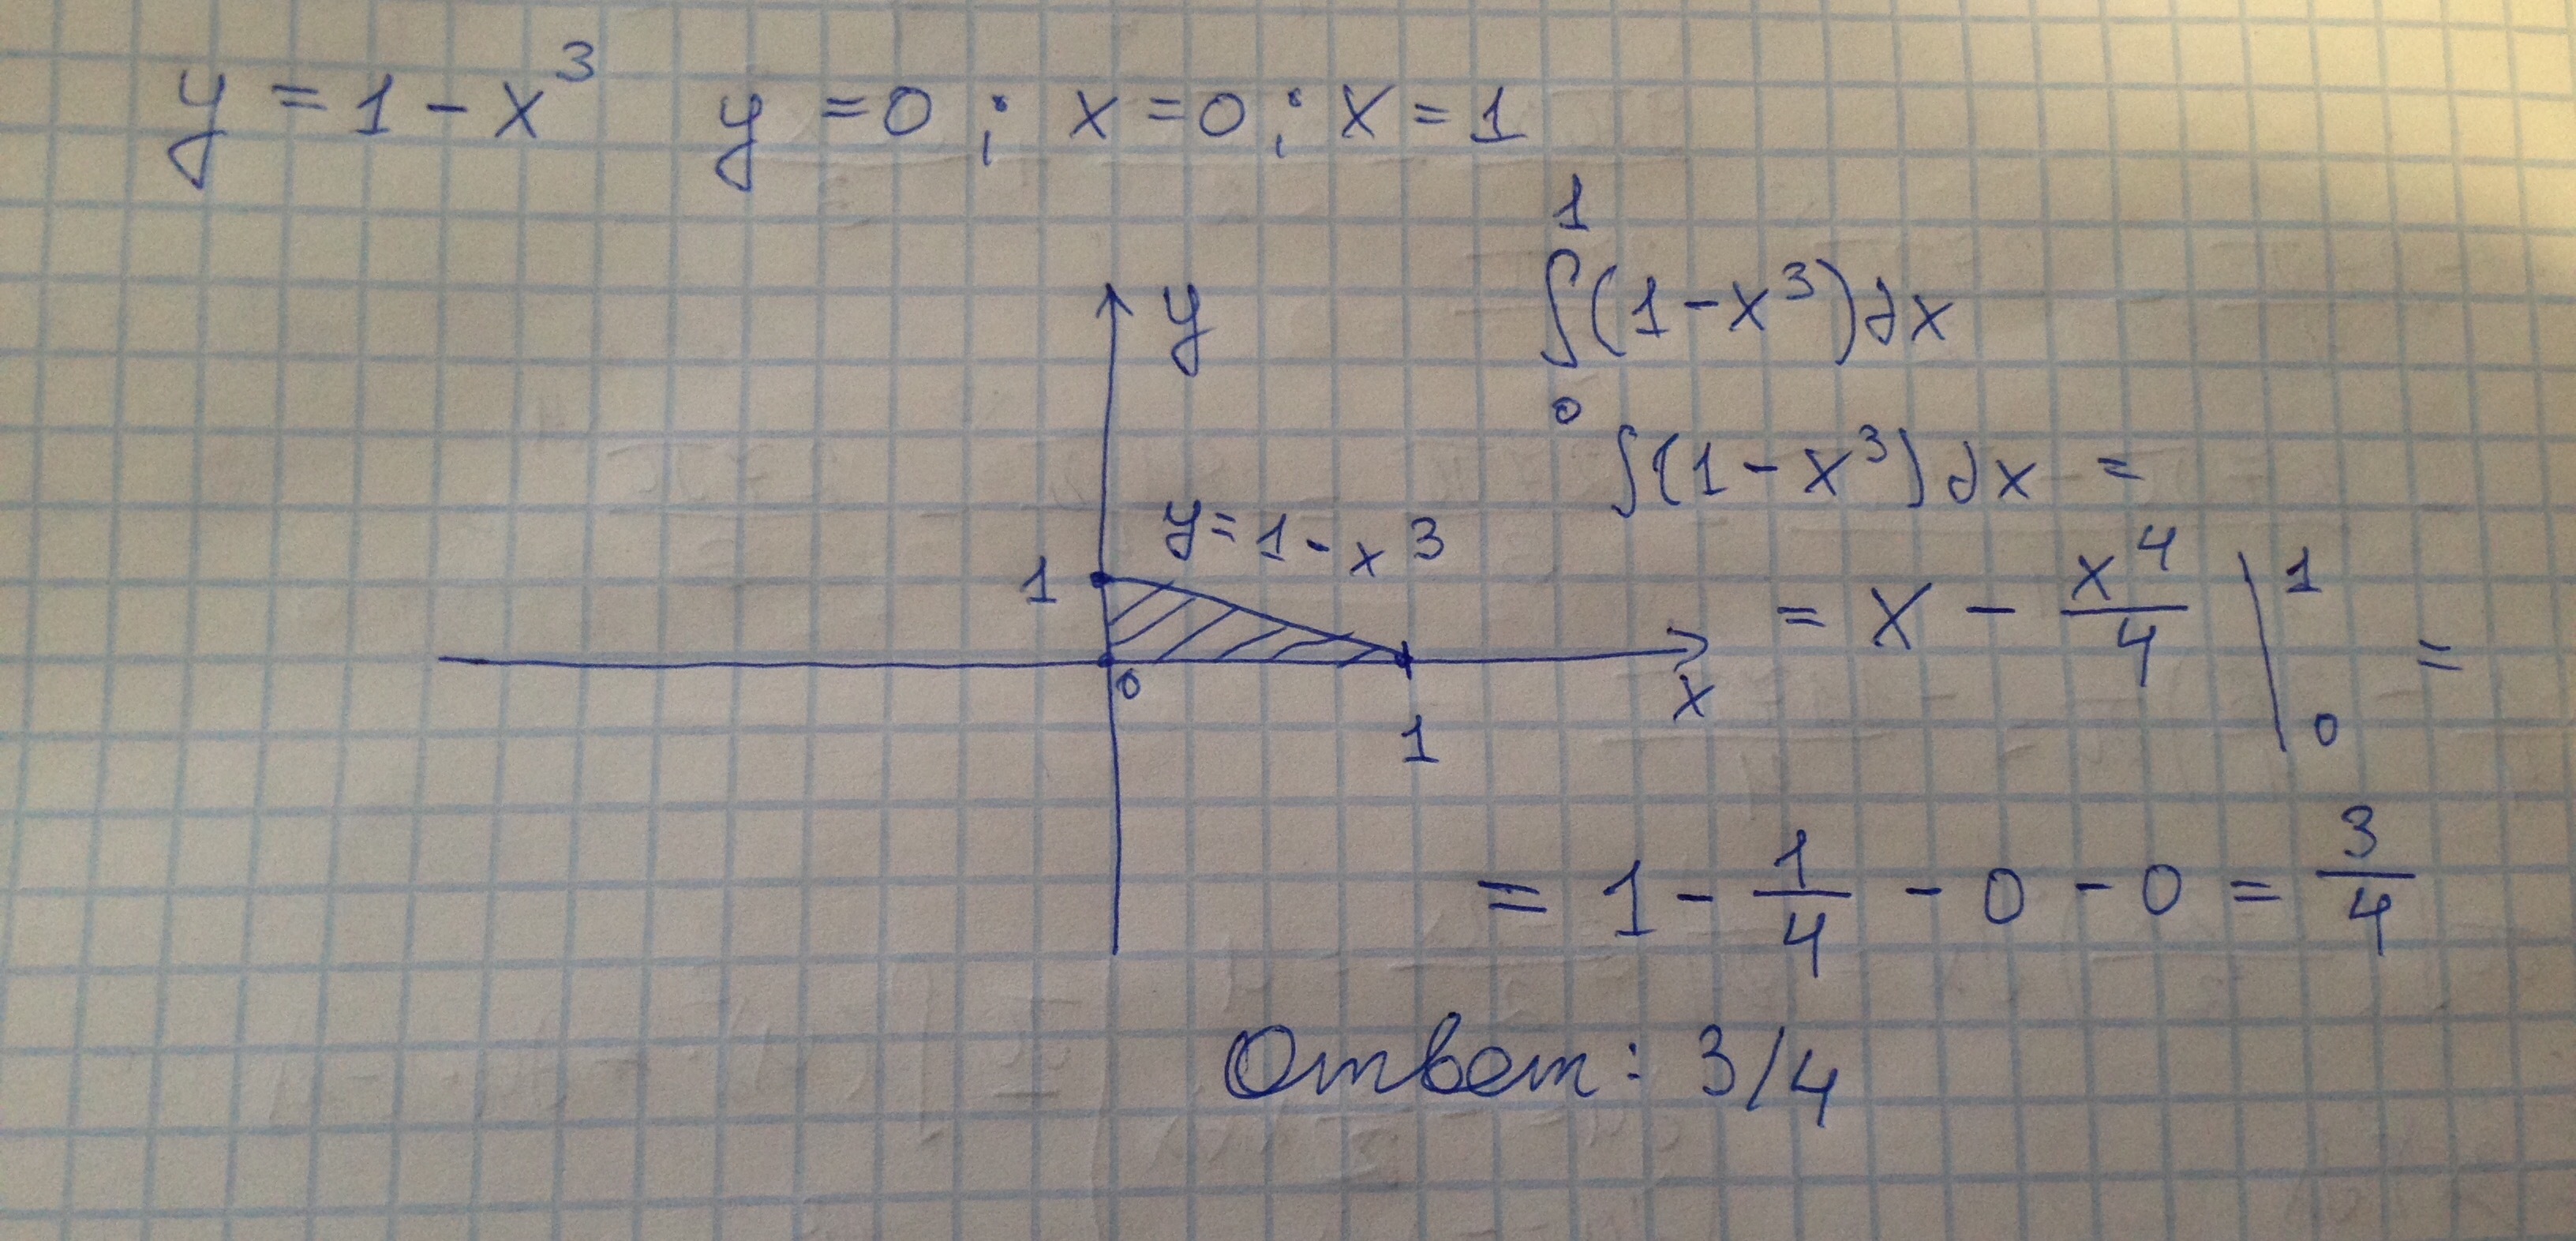 Х х 0 s x. Вычислите площадь фигуры ограниченной линиями у 1 х3 у 0 х -1. Вычислите площадь фигуры s ограниченной линиями у 1 х3 у 0 х 0 х 1. Вычислите площадь фигуры ограниченной линиями у х3 у 0 х 2. Вычислите площадь фигуры ограниченной линиями у х2 х 1 х 3 у 0.